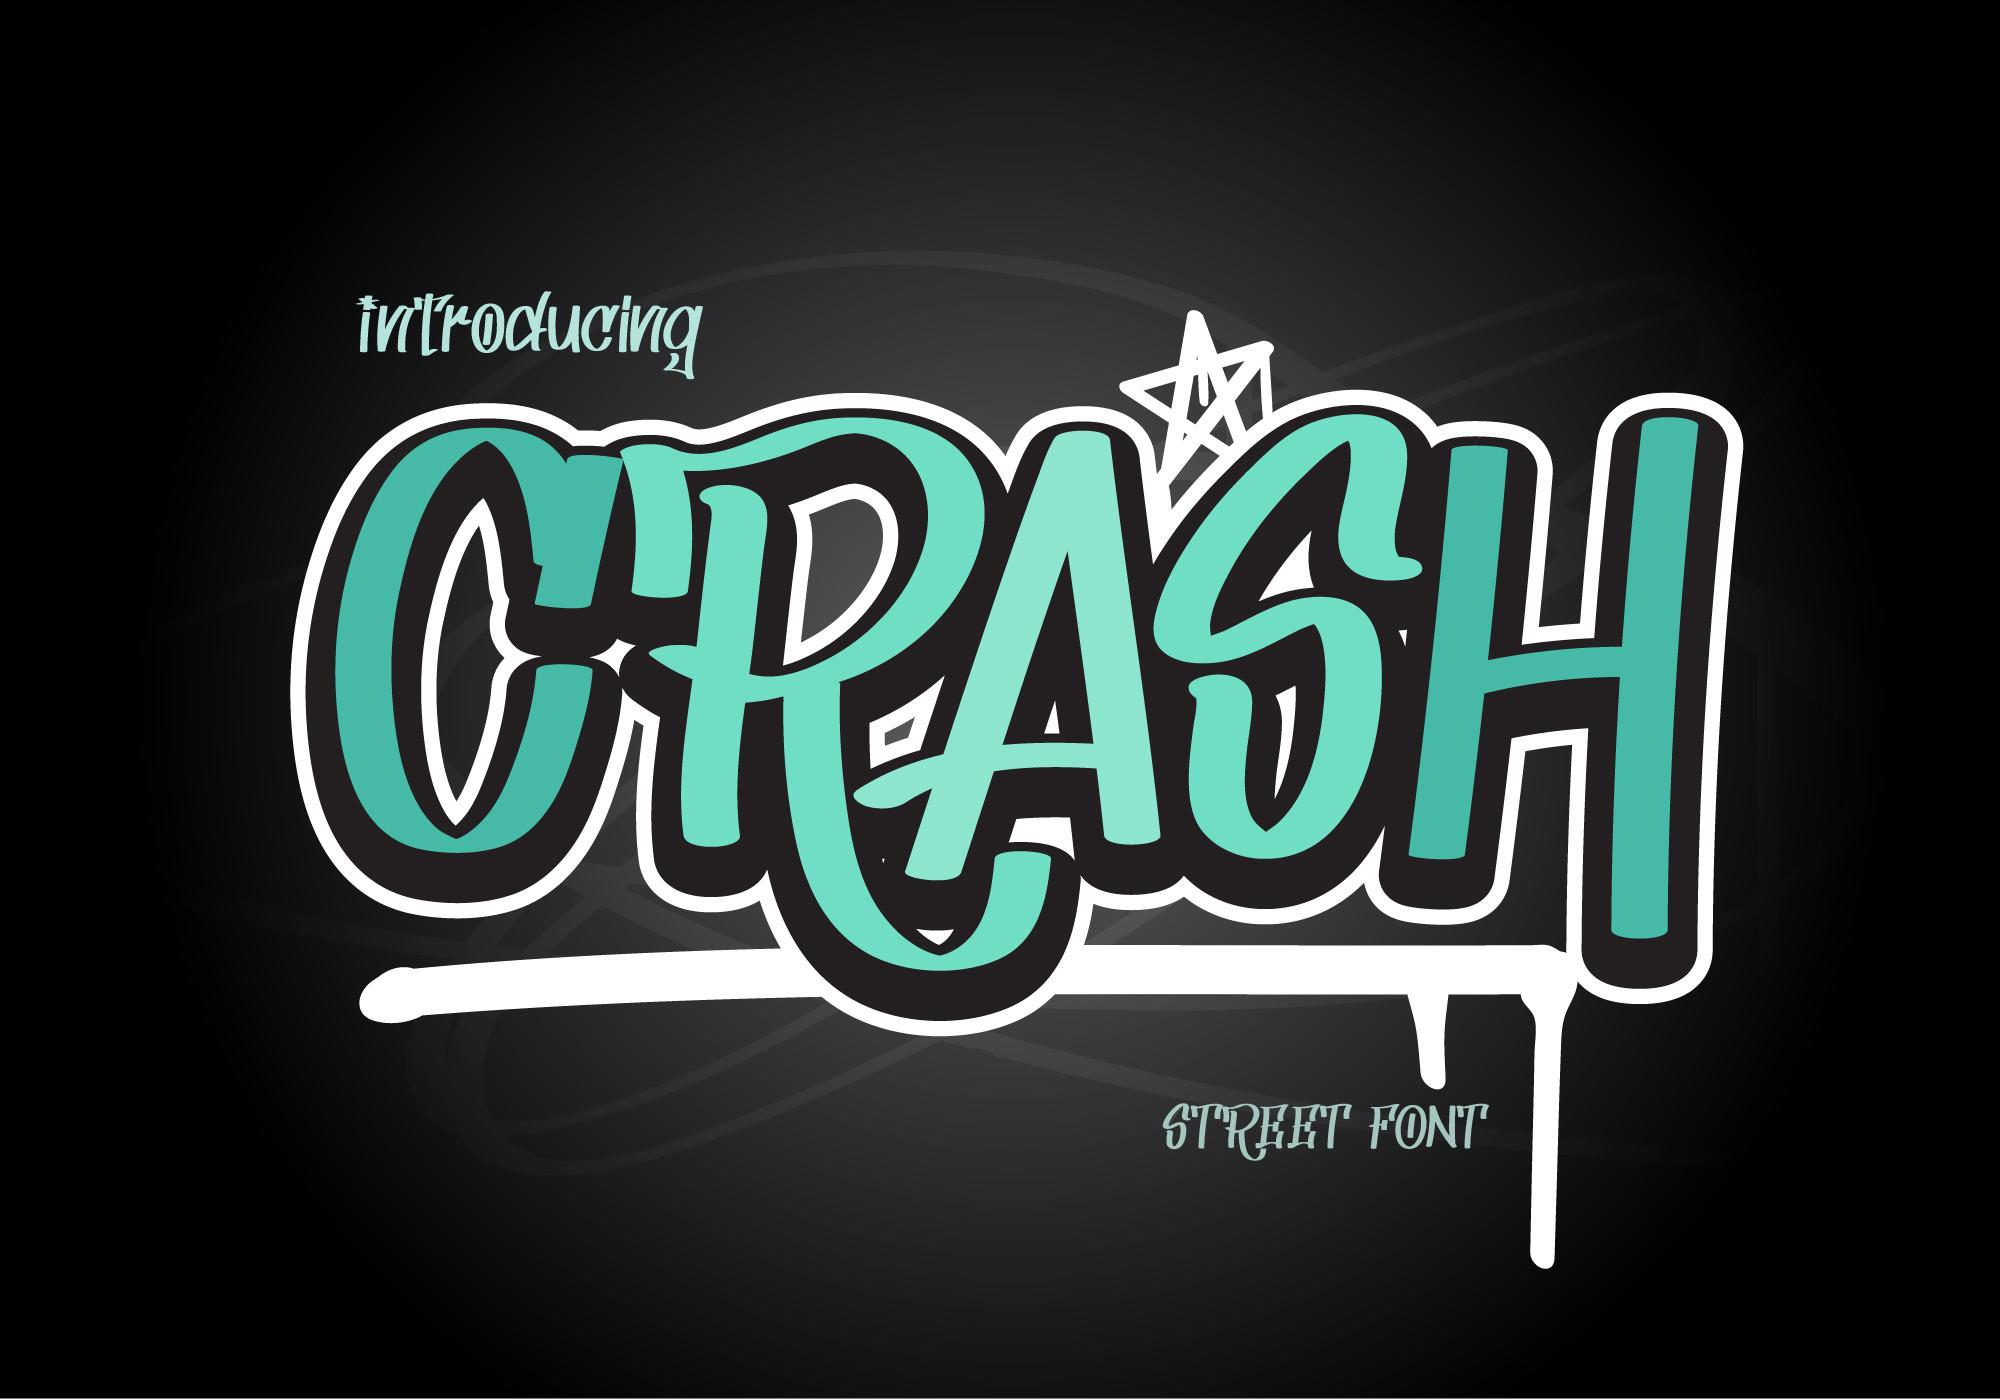 Crash Font